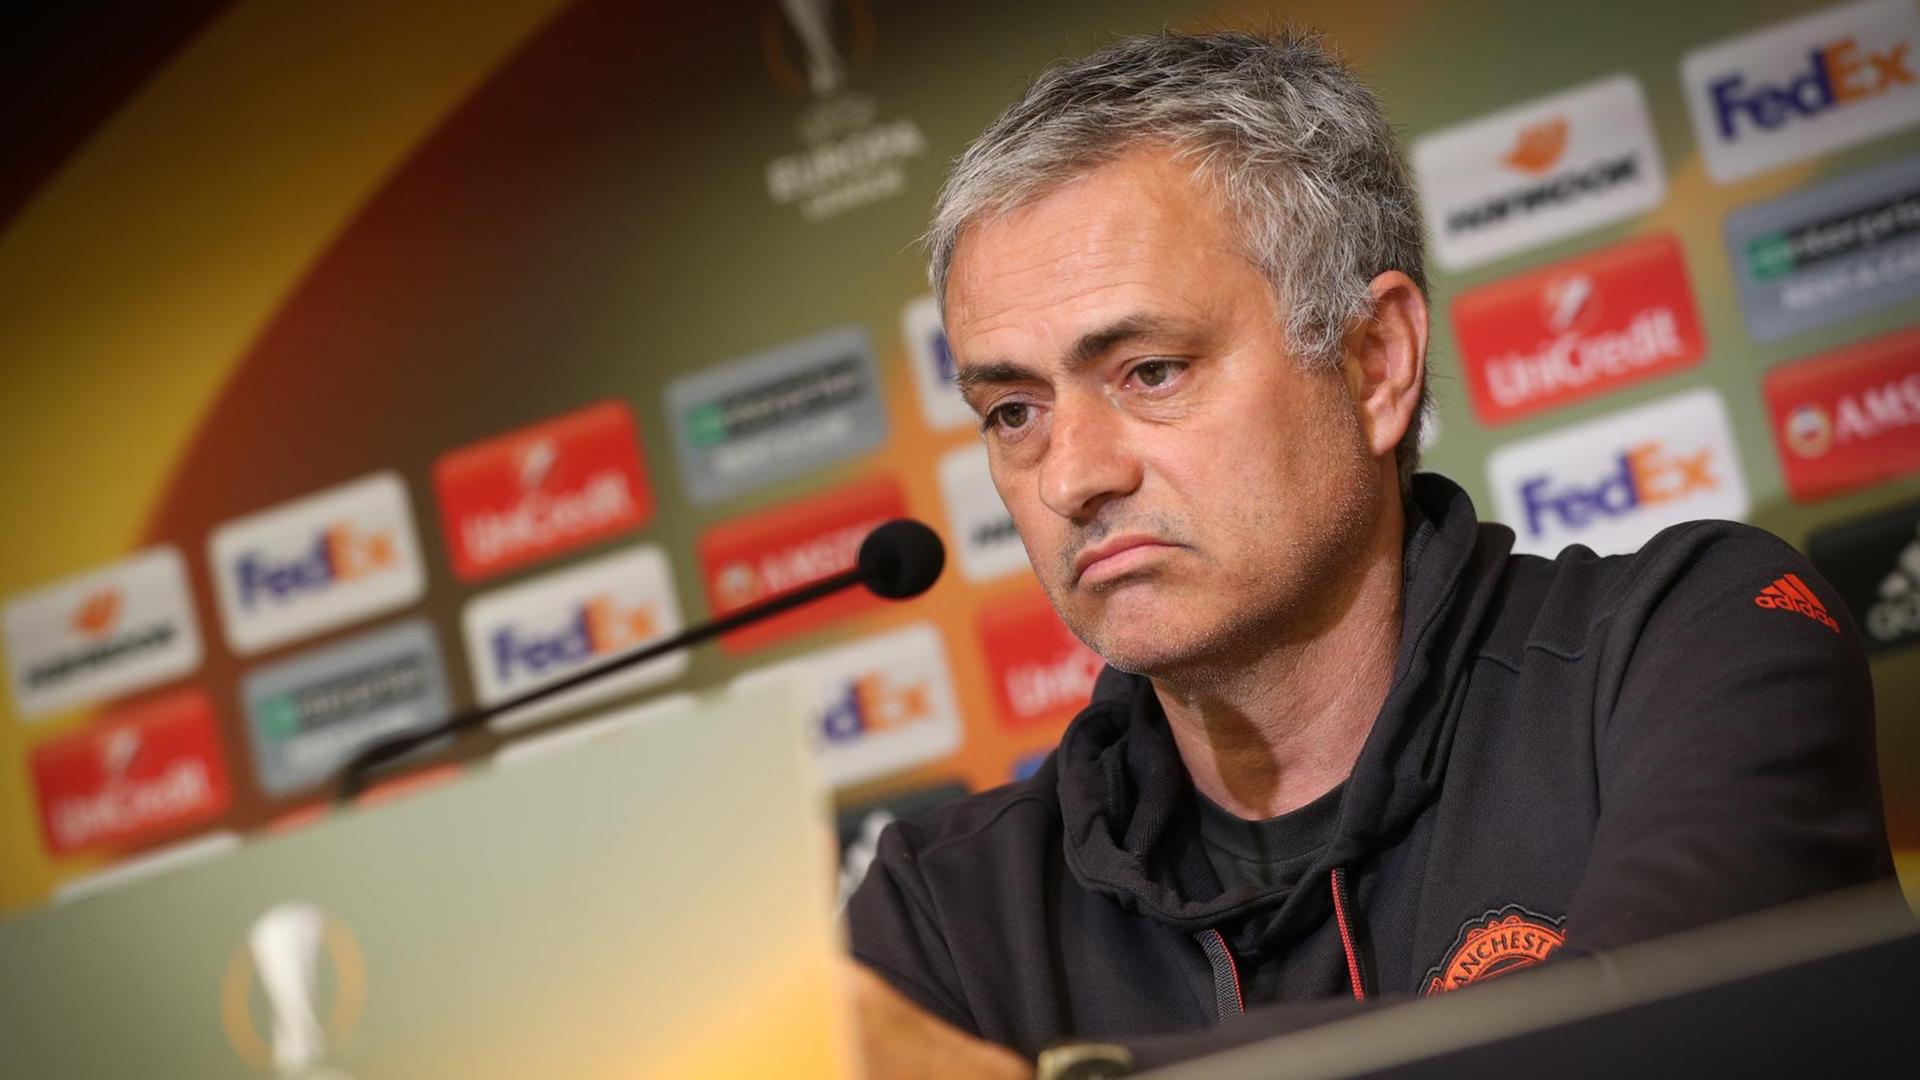 Jose Mourinho auf einer Pressekonferenz in Manchester.